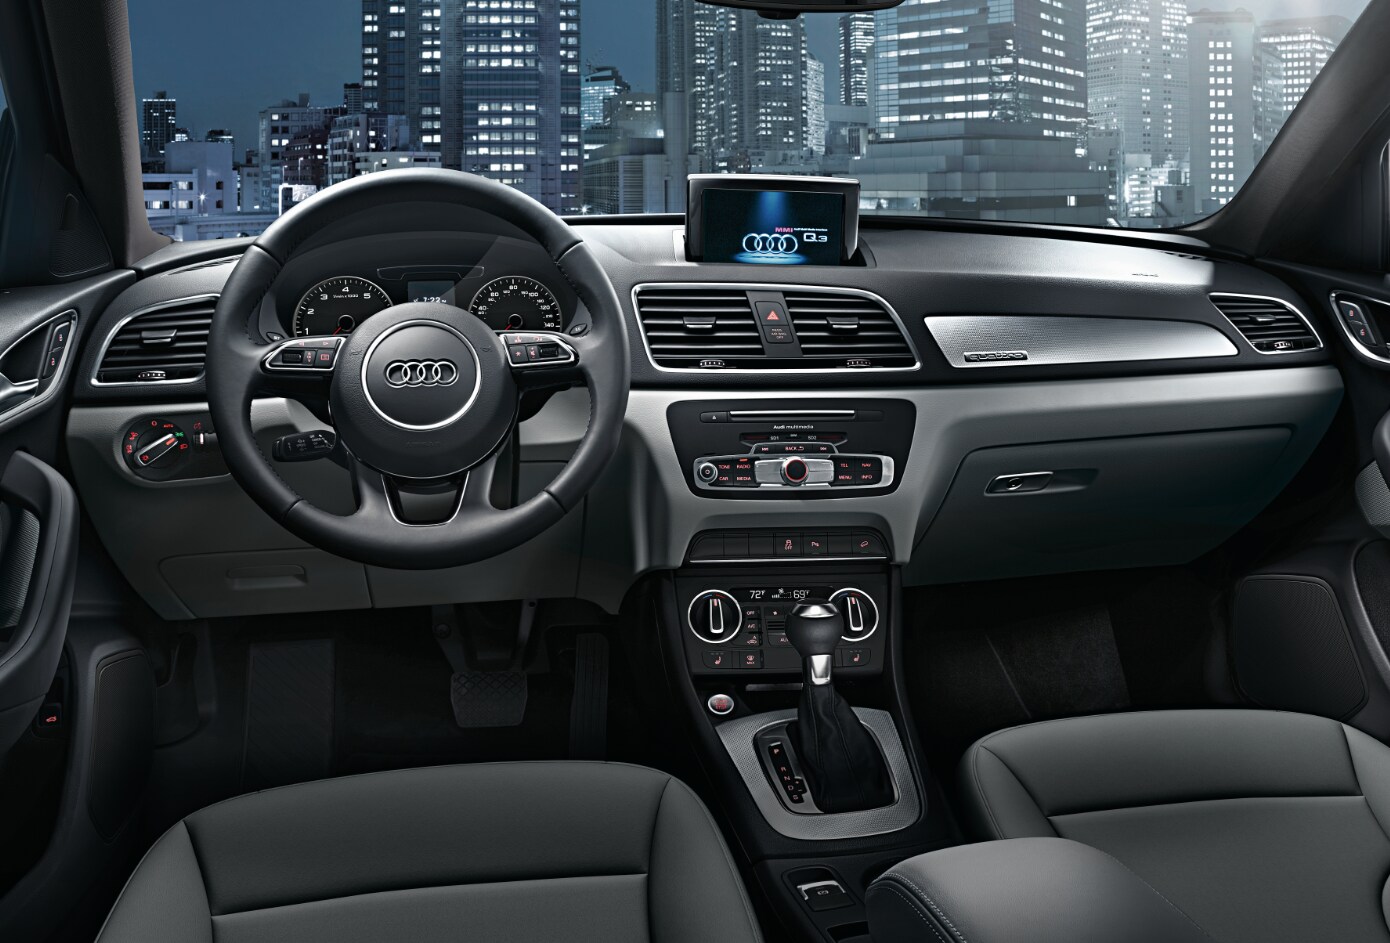 2018 Audi Q3 
Interior